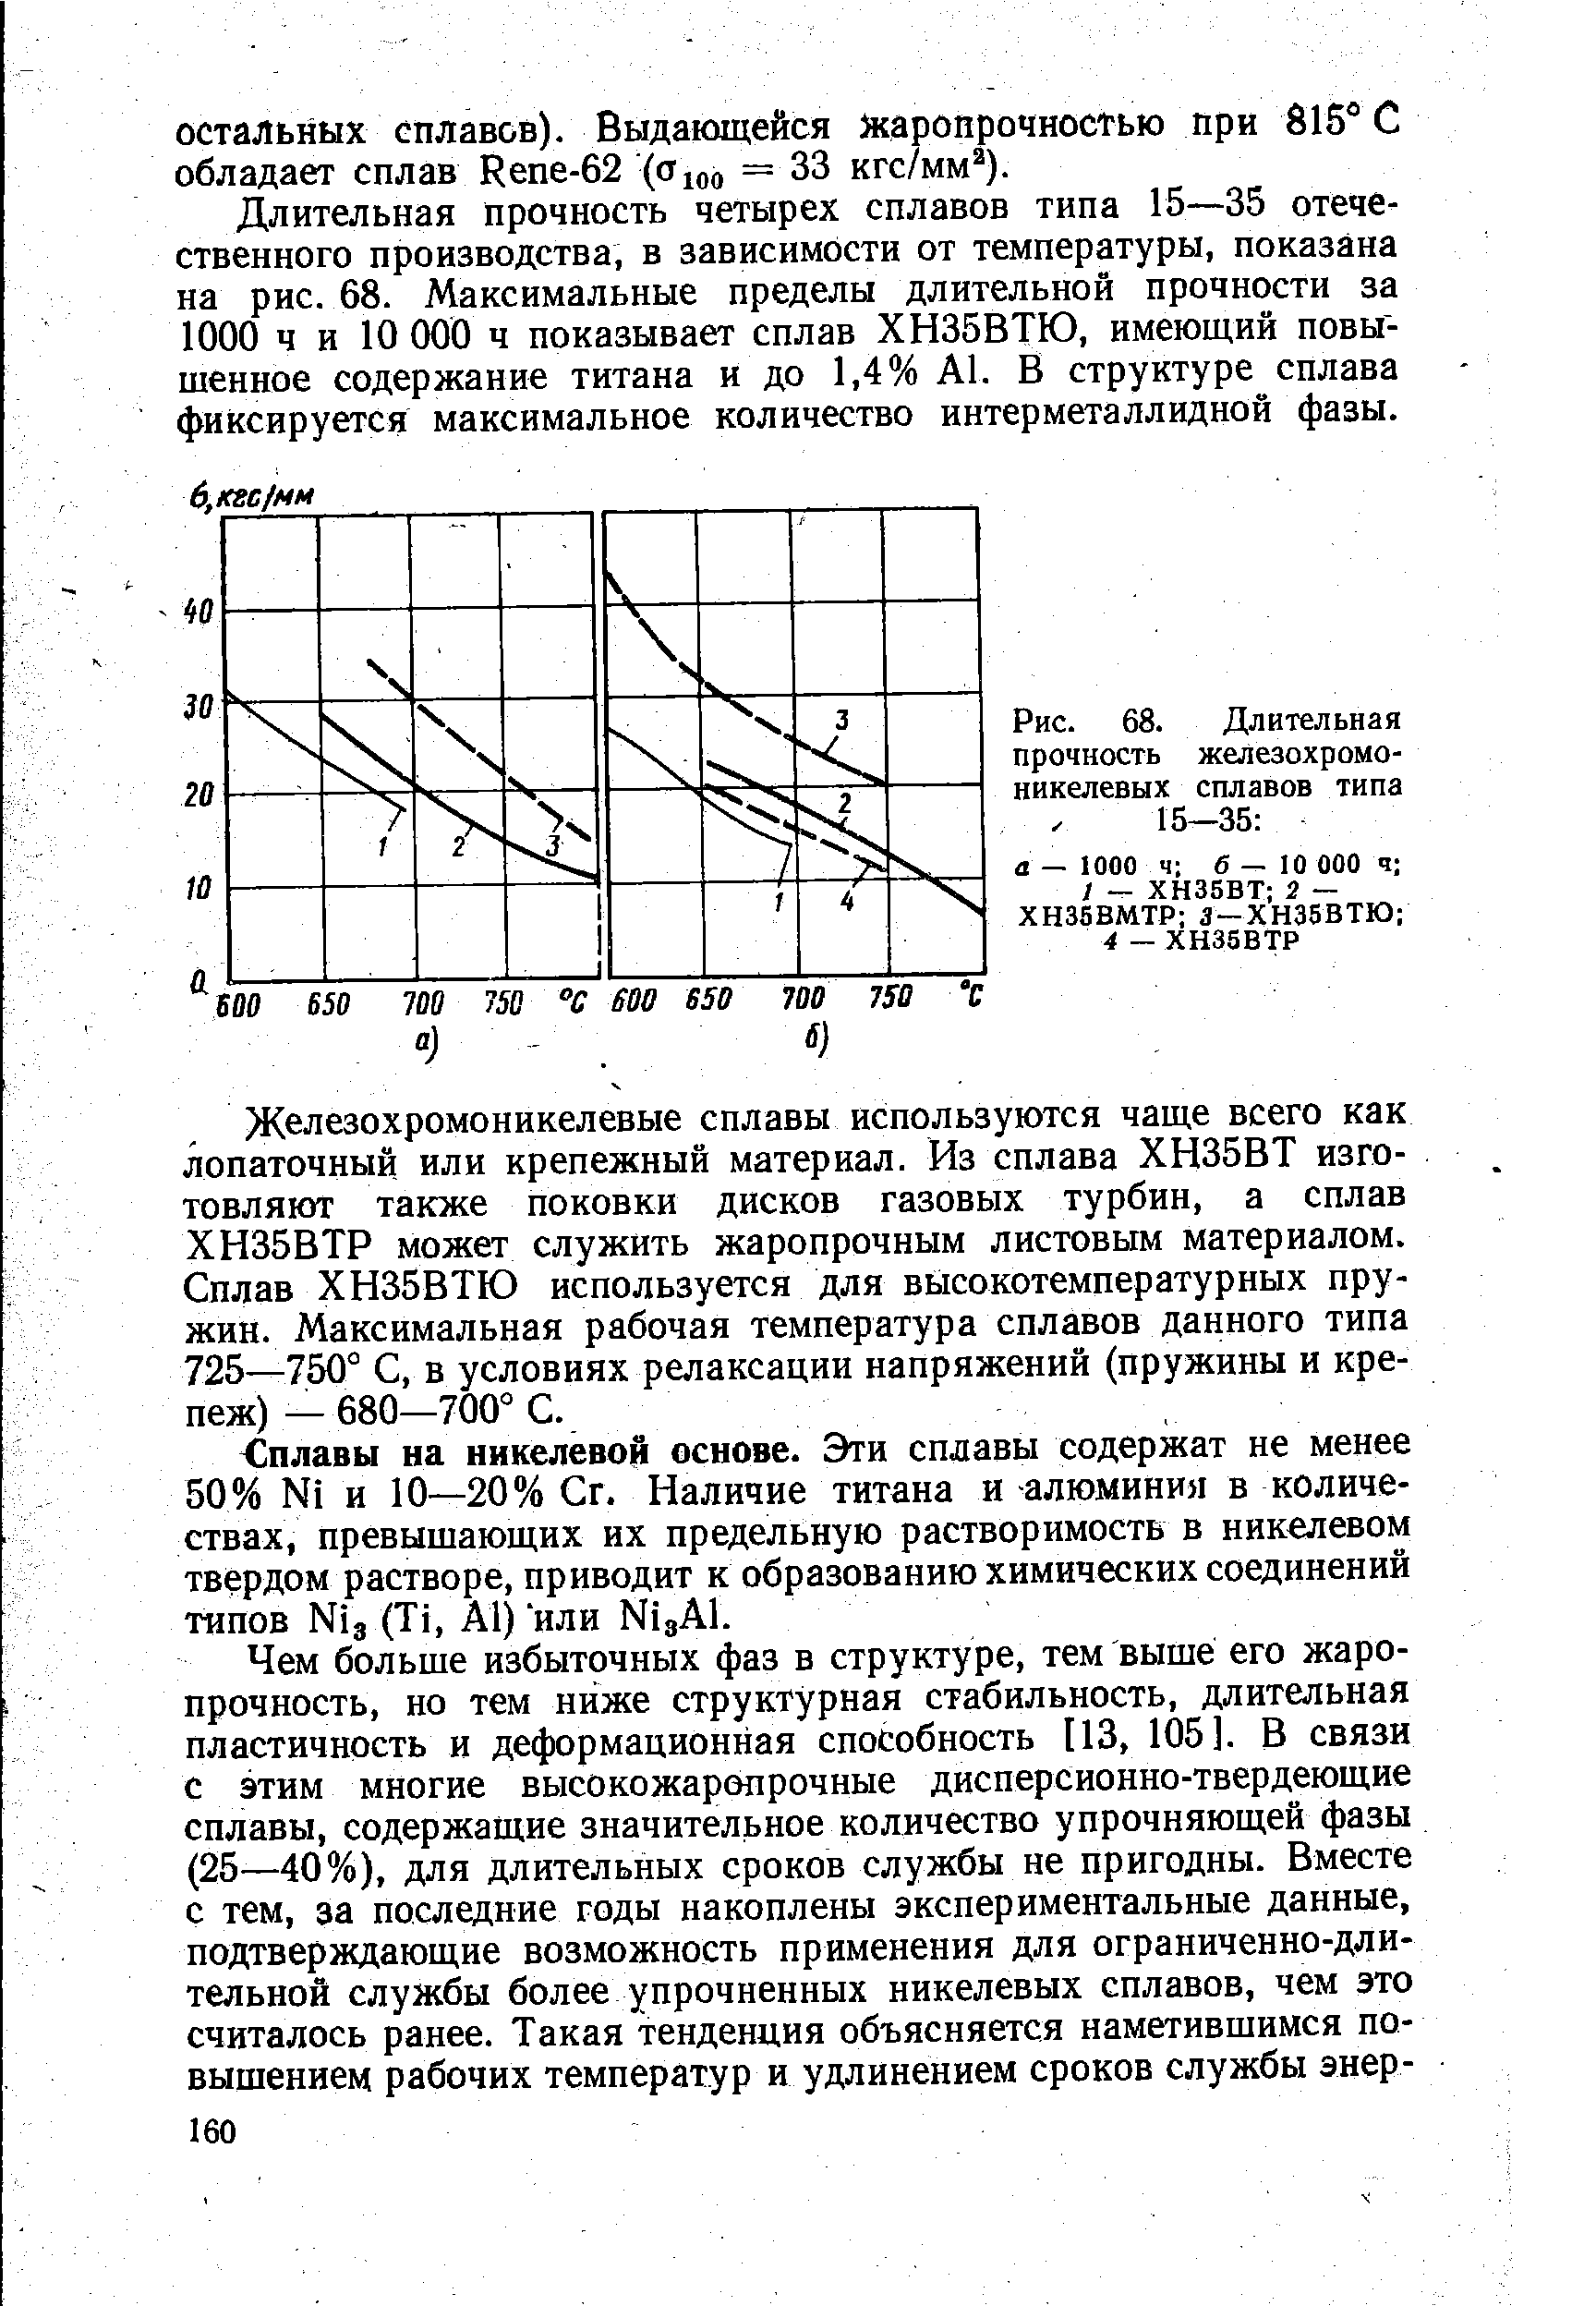 Рис. 68. <a href="/info/1690">Длительная прочность</a> железохромоникелевых сплавов типа 15—35 
